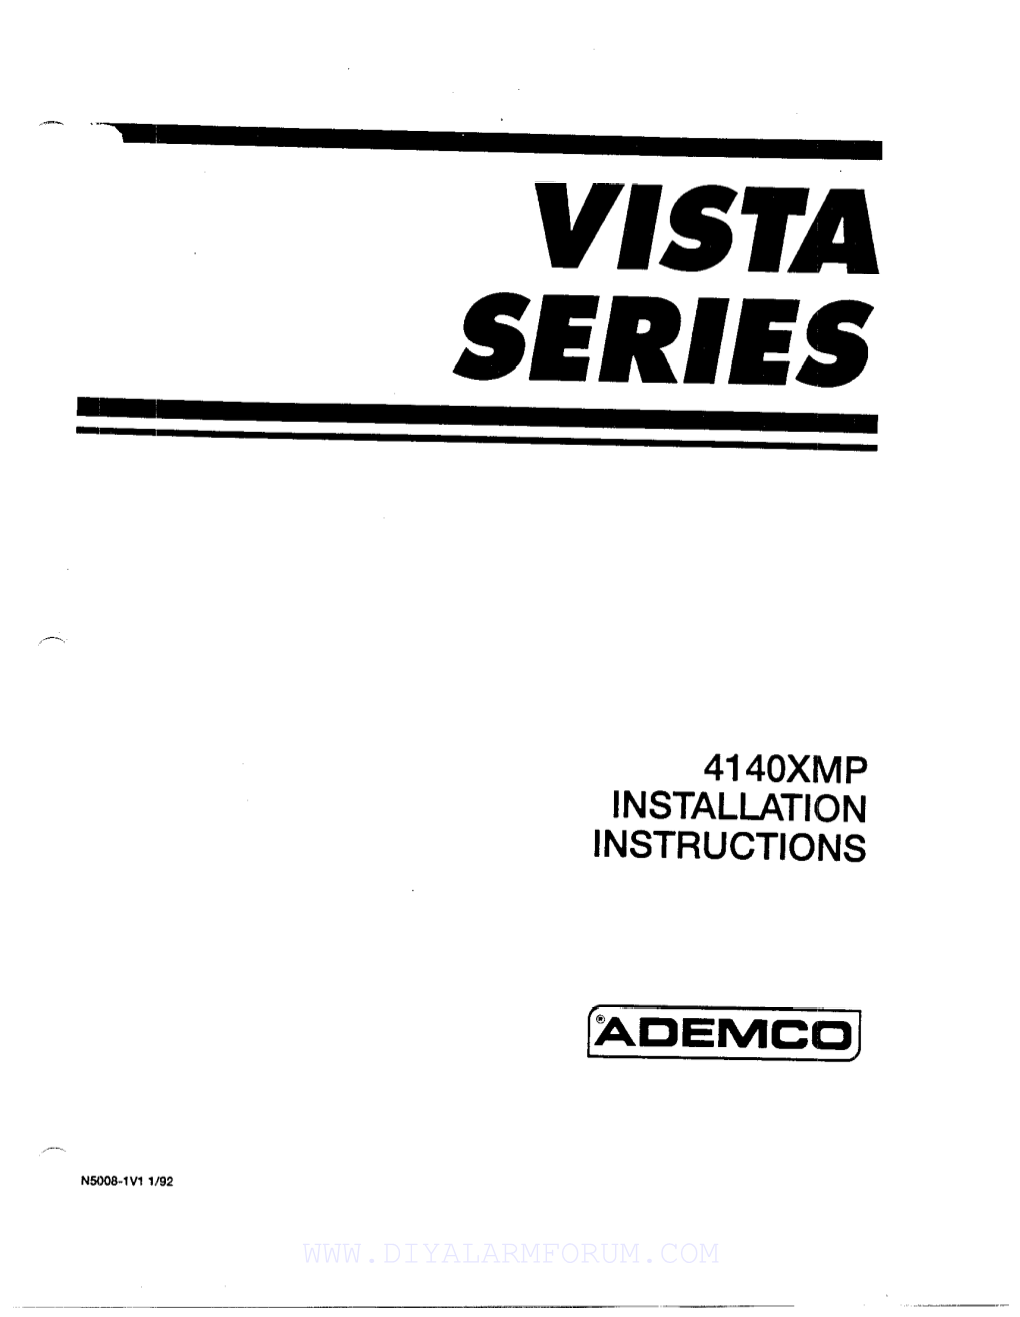 Vista Series